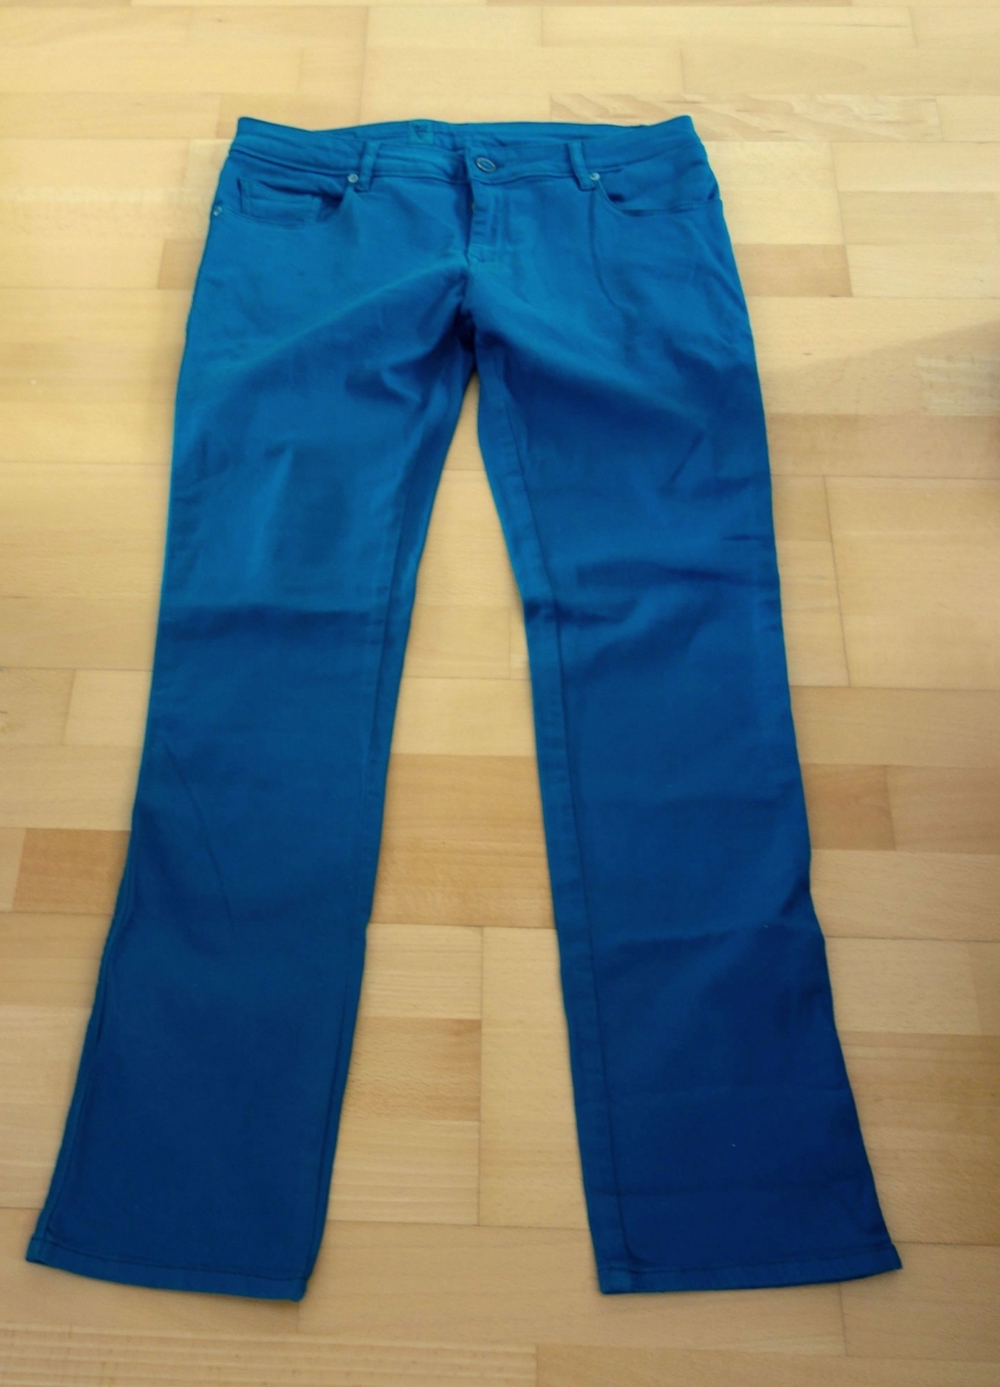 NEU mit Schild smaragdgrüne Hose 32 32 von Volcom Brand Jeans